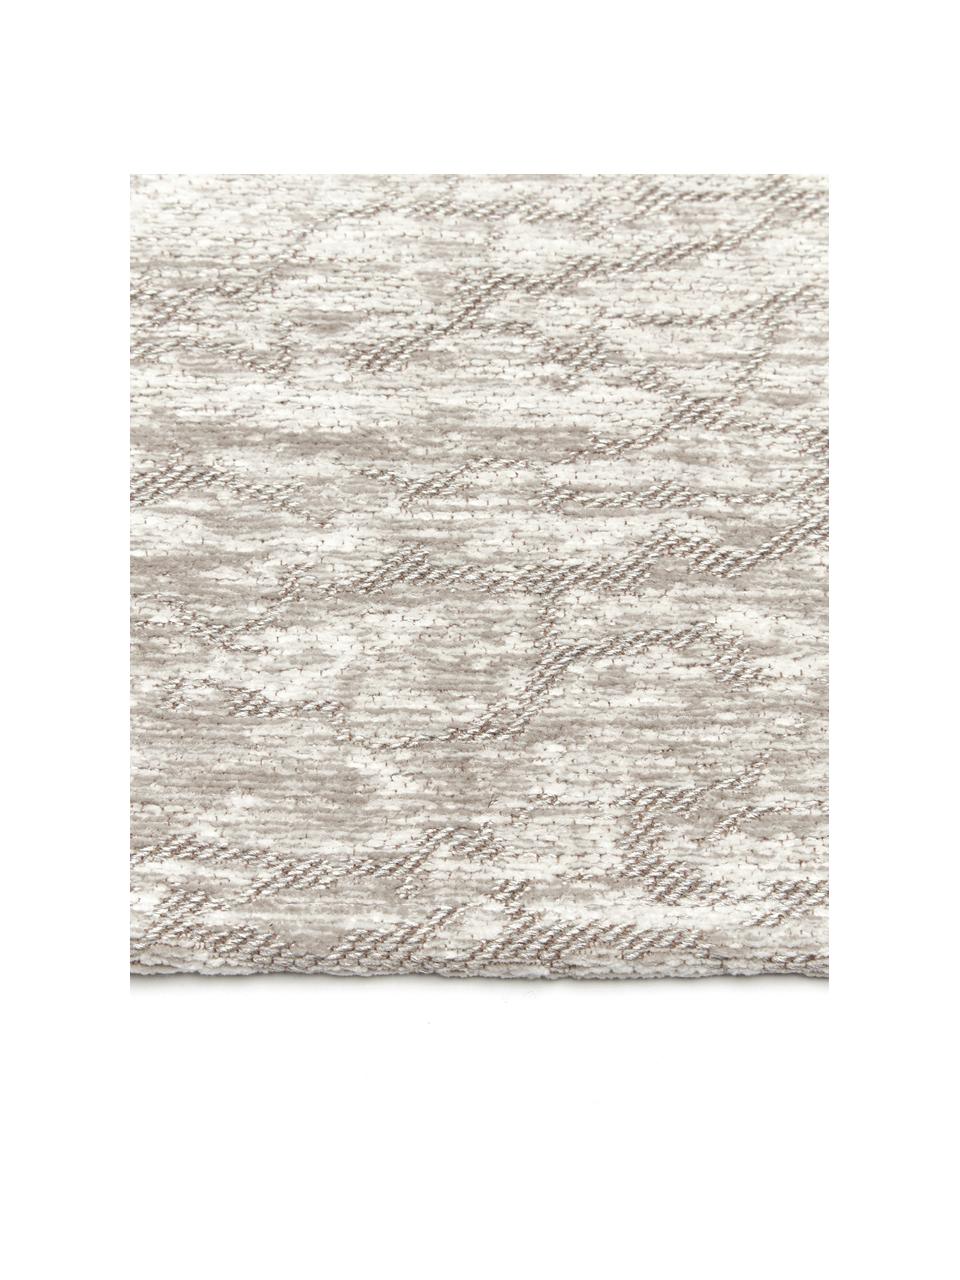 Tappeto taftato a mano in cotone beige/grigio chiaro Imani, Retro: lattice, Beige, grigio chiaro, Larg. 80 x Lung. 150 cm (taglia XS)